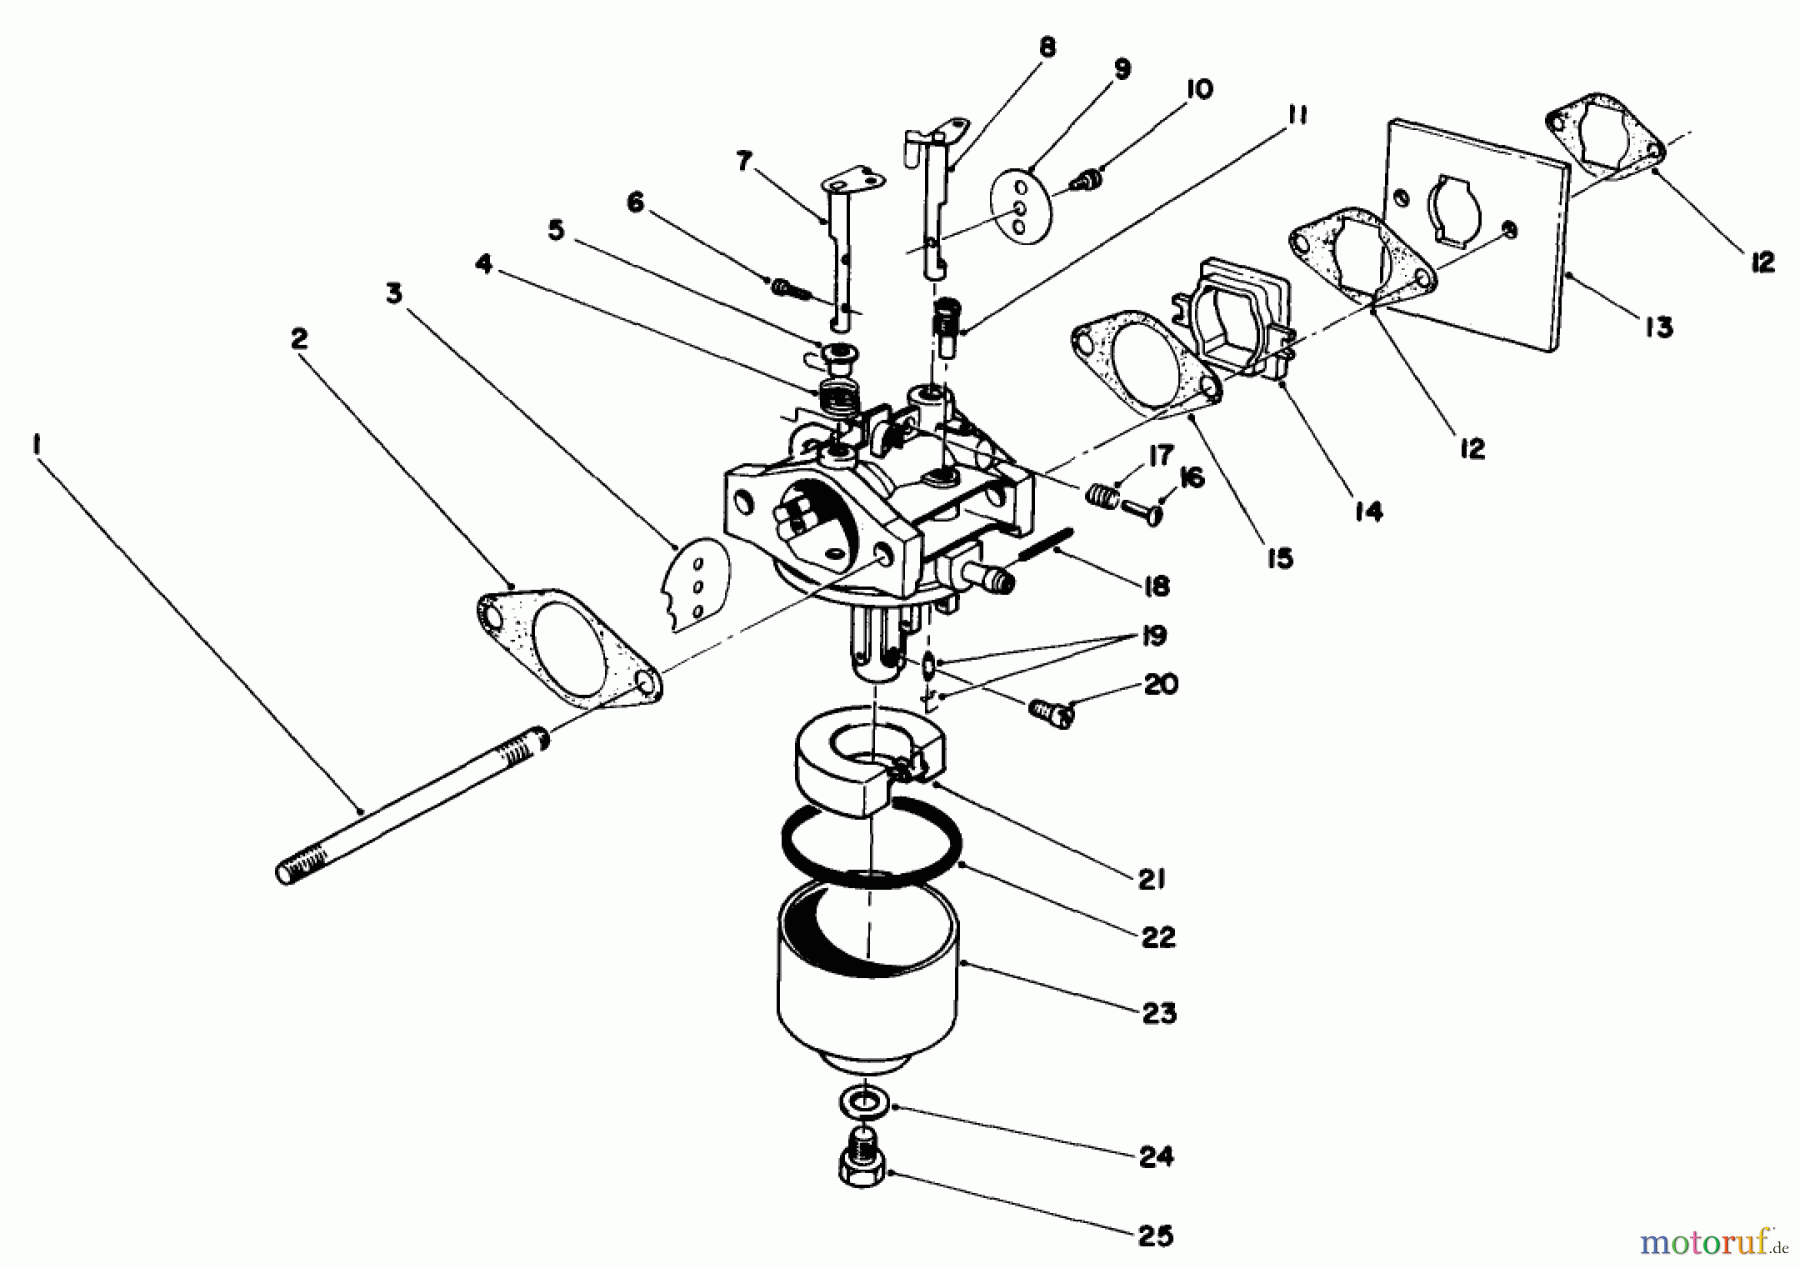  Toro Neu Mowers, Walk-Behind Seite 2 22025C - Toro Lawnmower, 1988 (8000001-8999999) ENGINE ASSEMBLY MODEL NO. 47PH7 #3